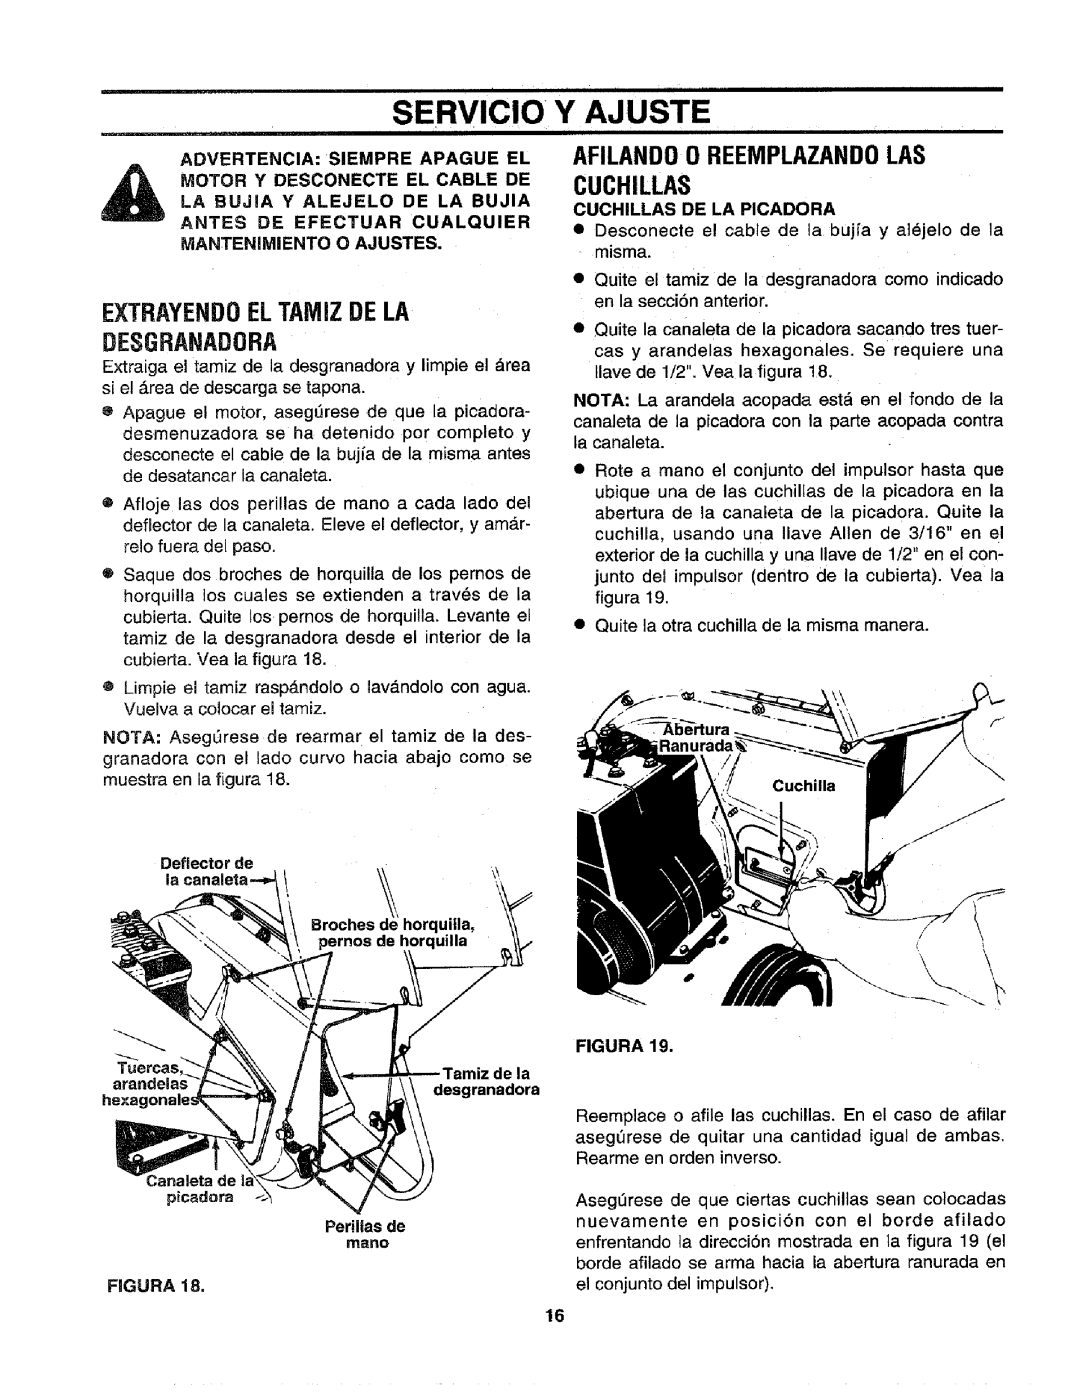 Craftsman 79585 manual Servicio, Y Ajuste, EXTRAYEND0 EL TAME DE LA DESGRANADORA, AFILANDO 0 REEMPLAZANDOLAS CUCHILLAS 